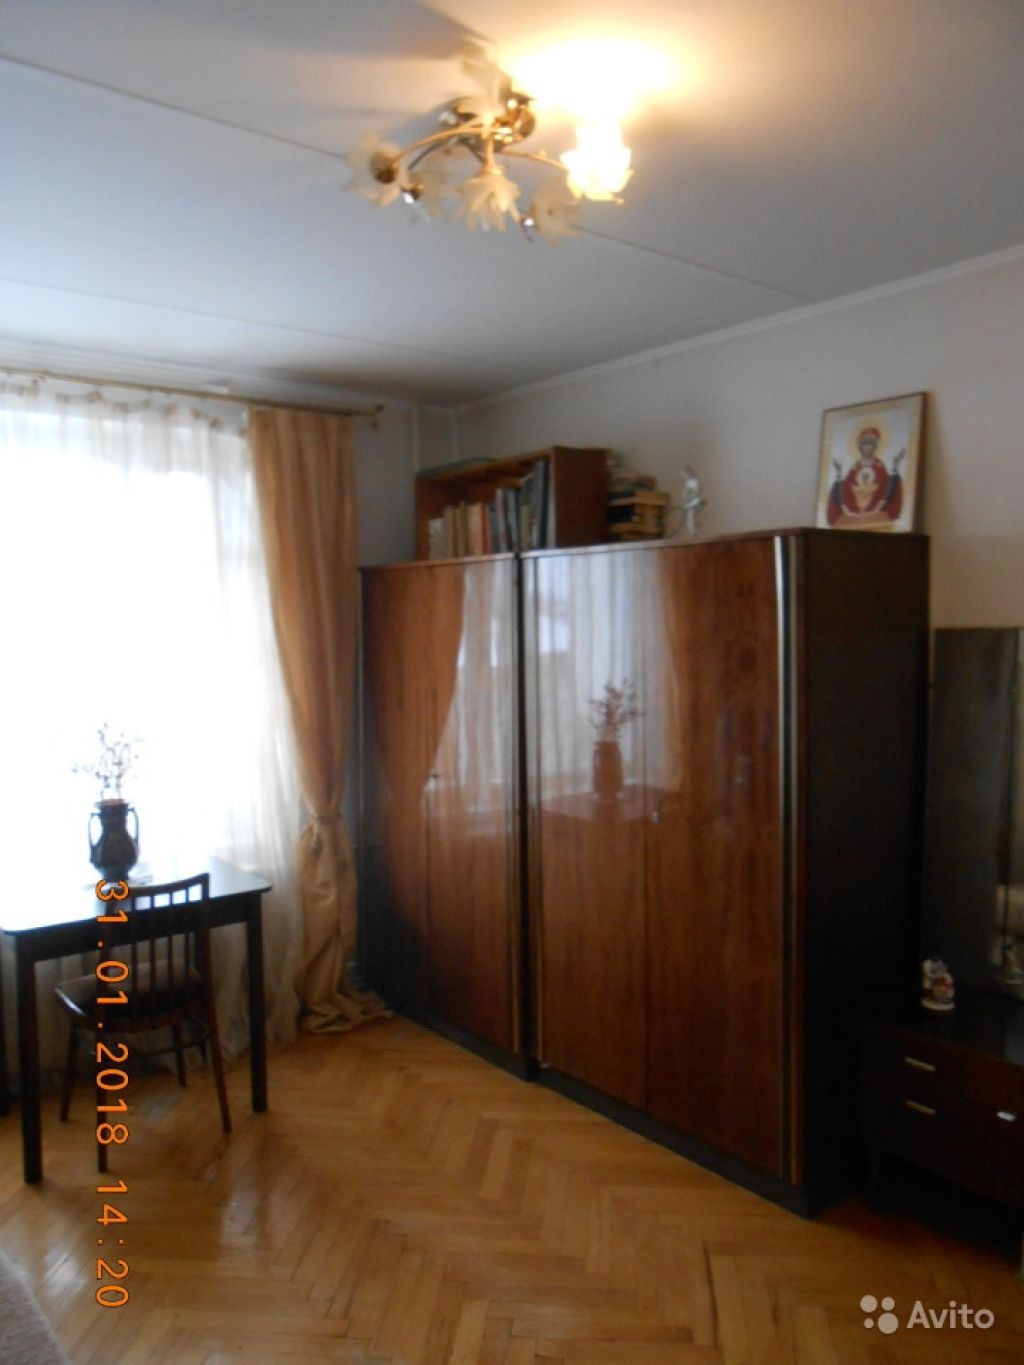 Сдам комнату Комната 16 м² в 3-к квартире на 6 этаже 9-этажного блочного дома в Москве. Фото 1